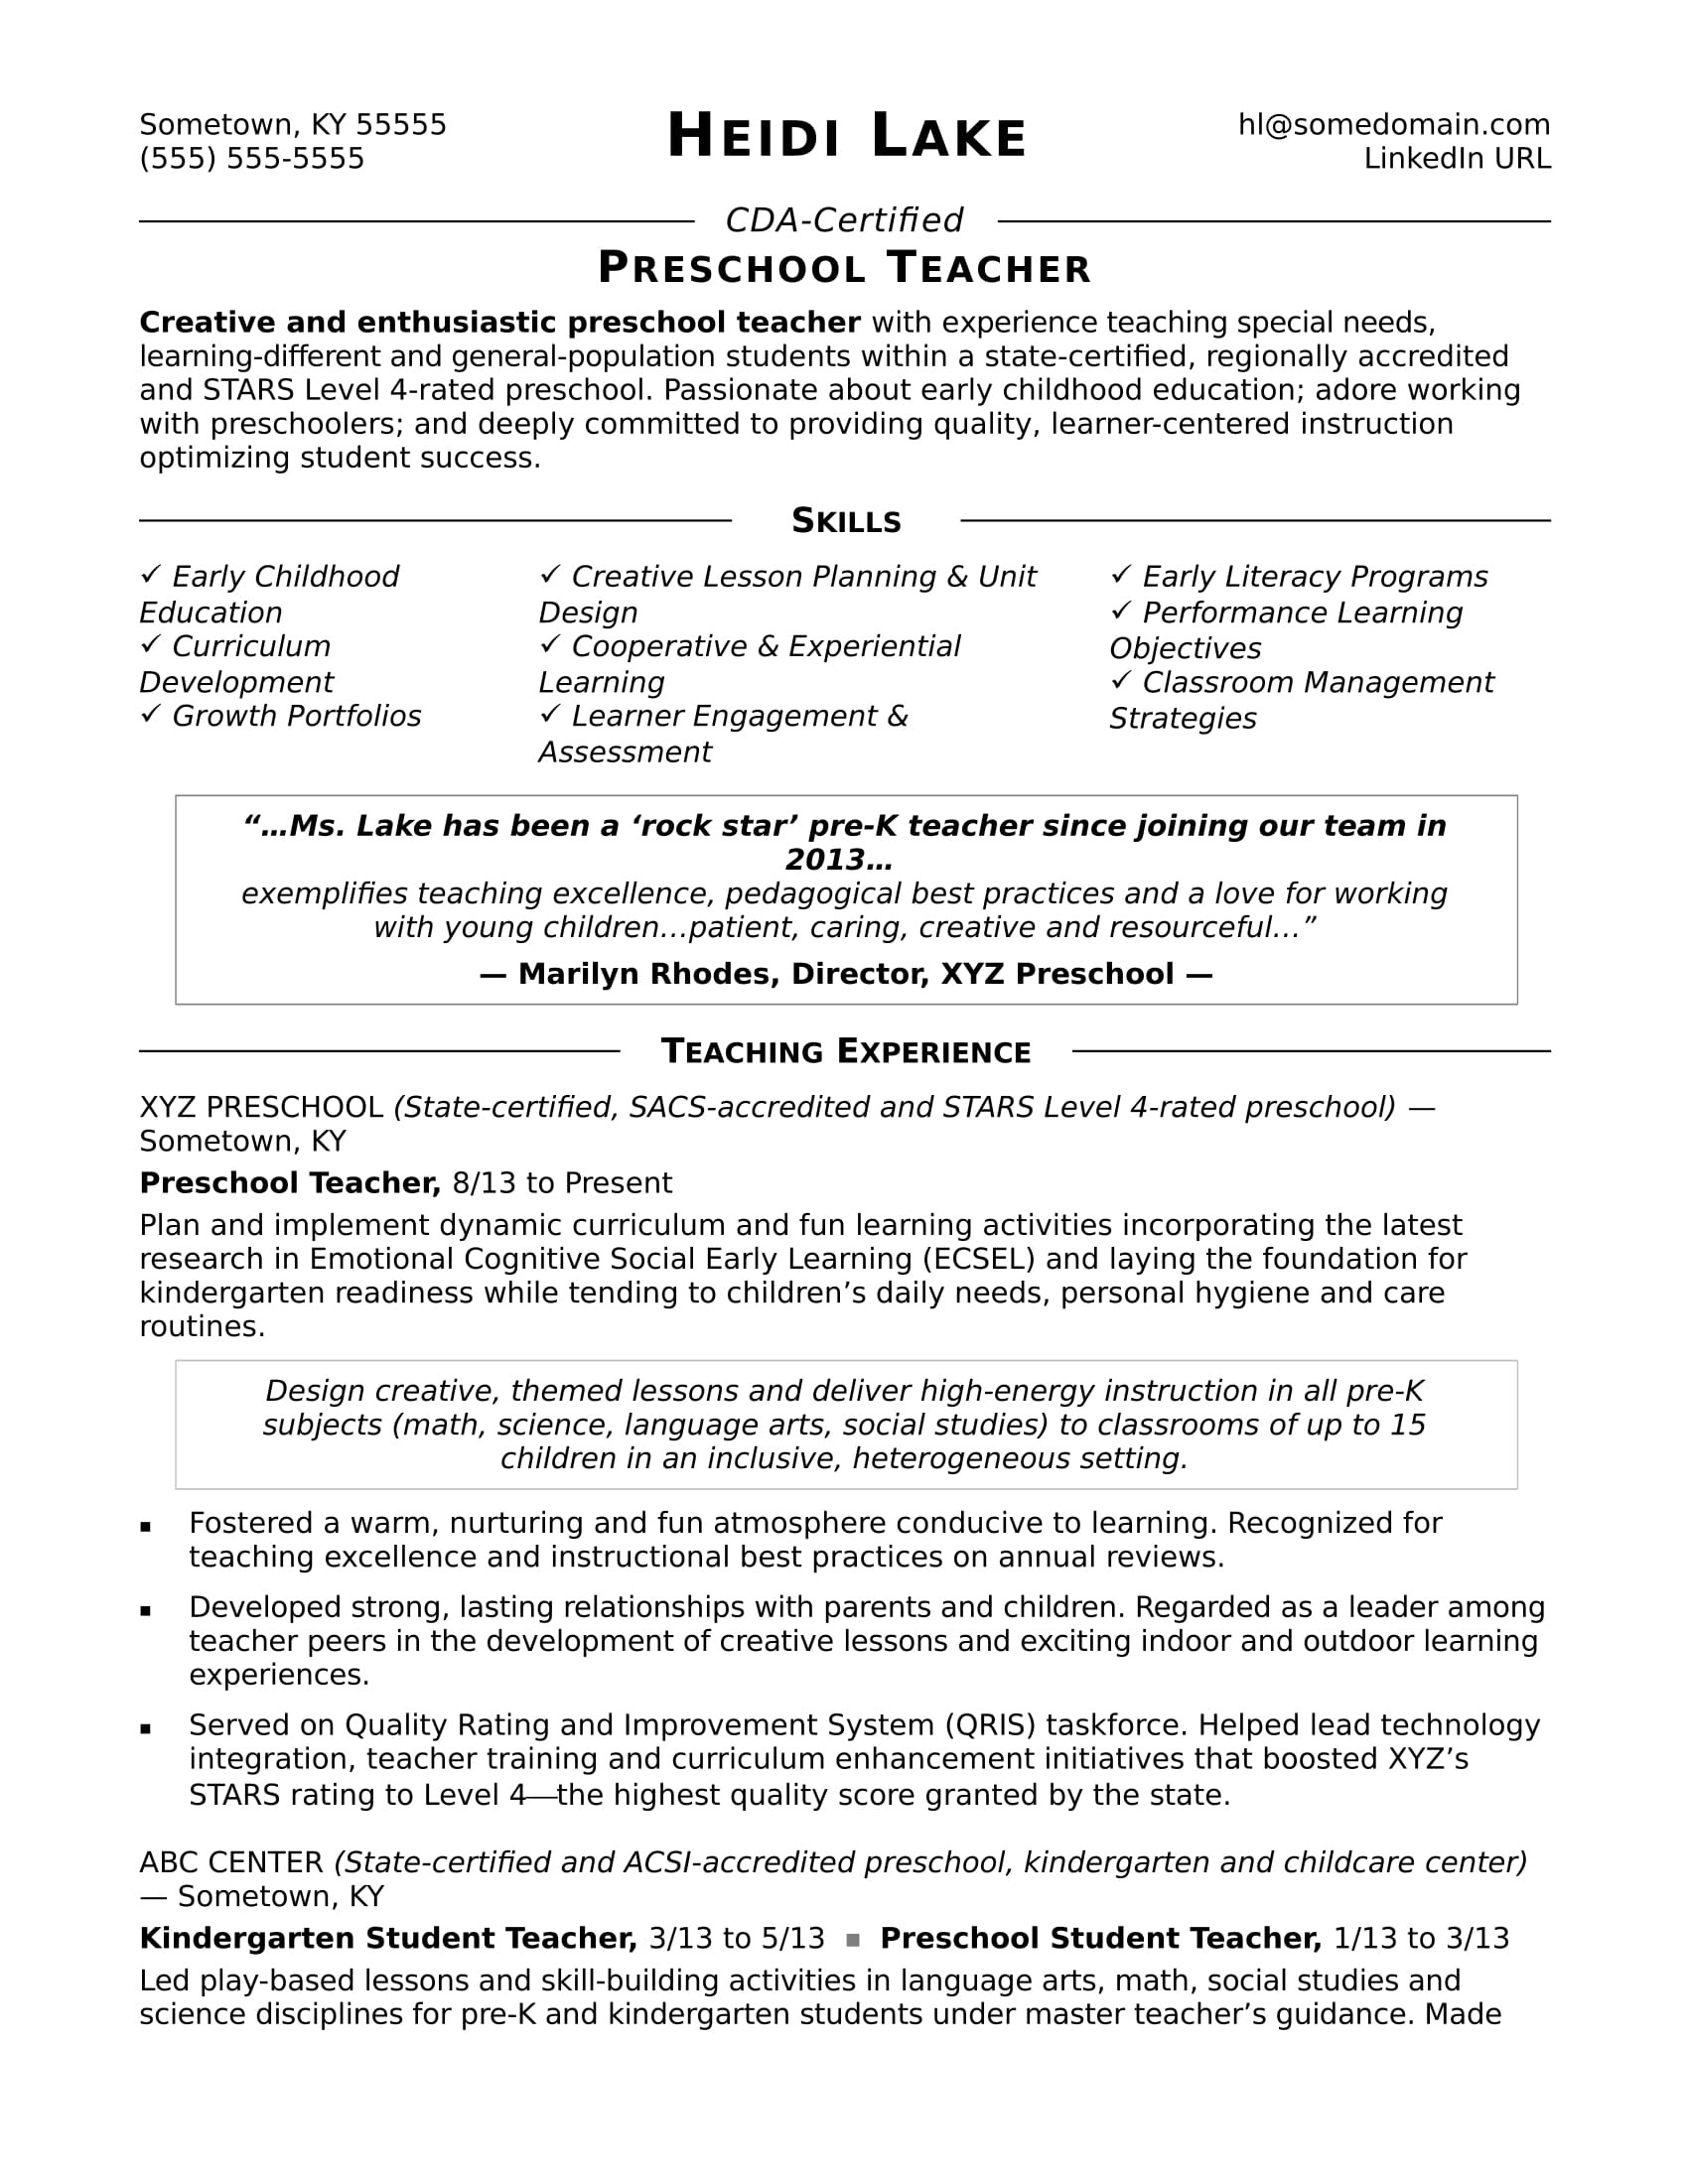 Sample Resume for Preschool Teacher with Experience Preschool Teacher Resume Sample Monster.com